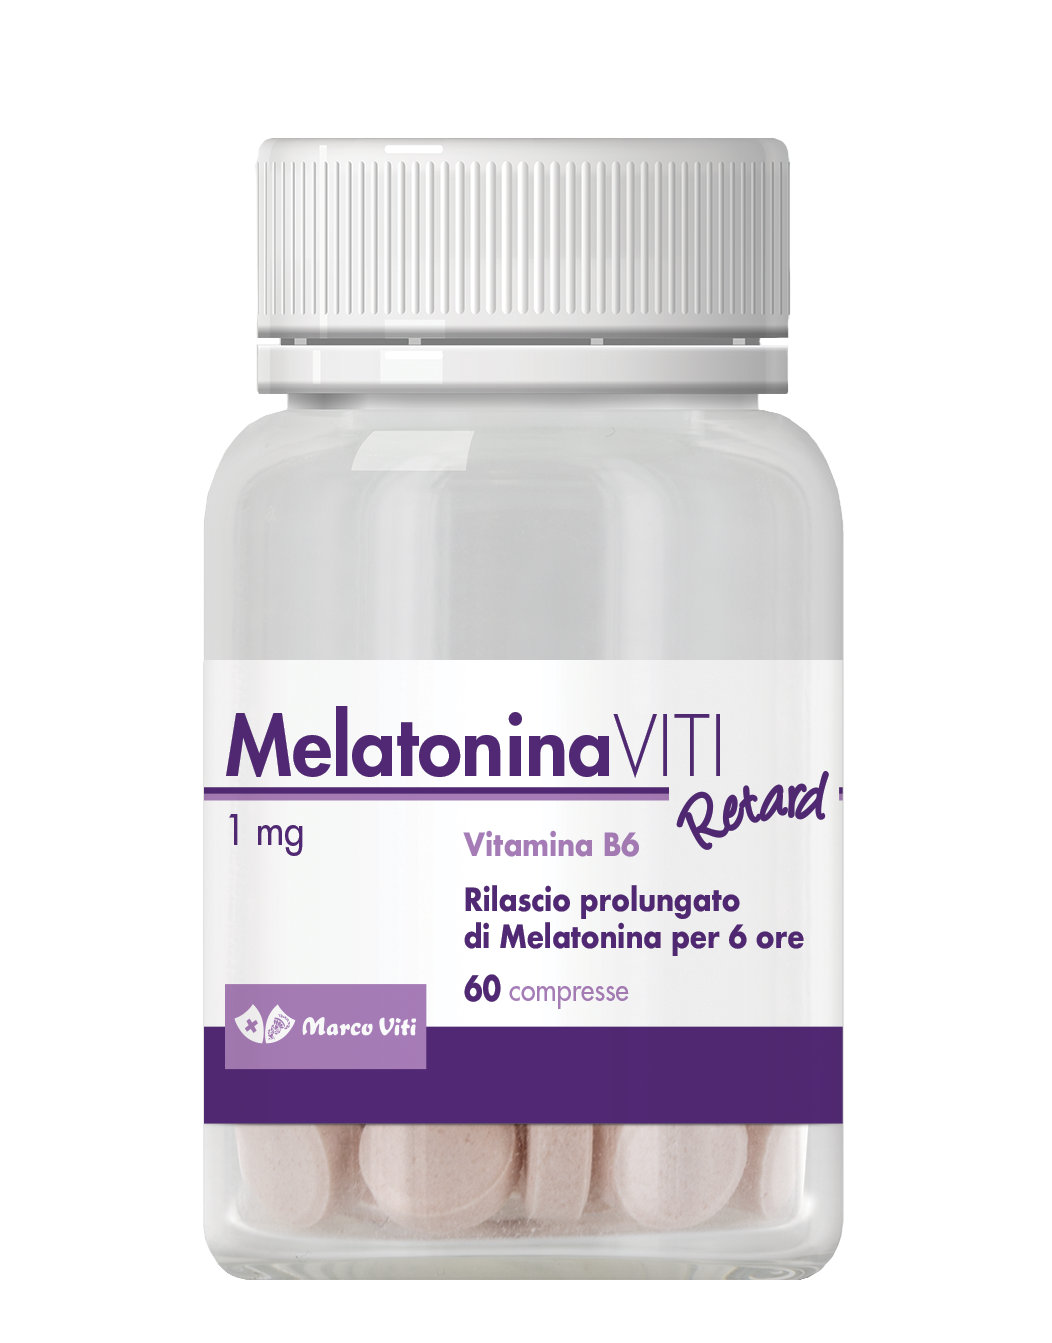 Melatonina - no Celeiro - em Infarmed - no site do fabricante - onde comprar - no farmacia